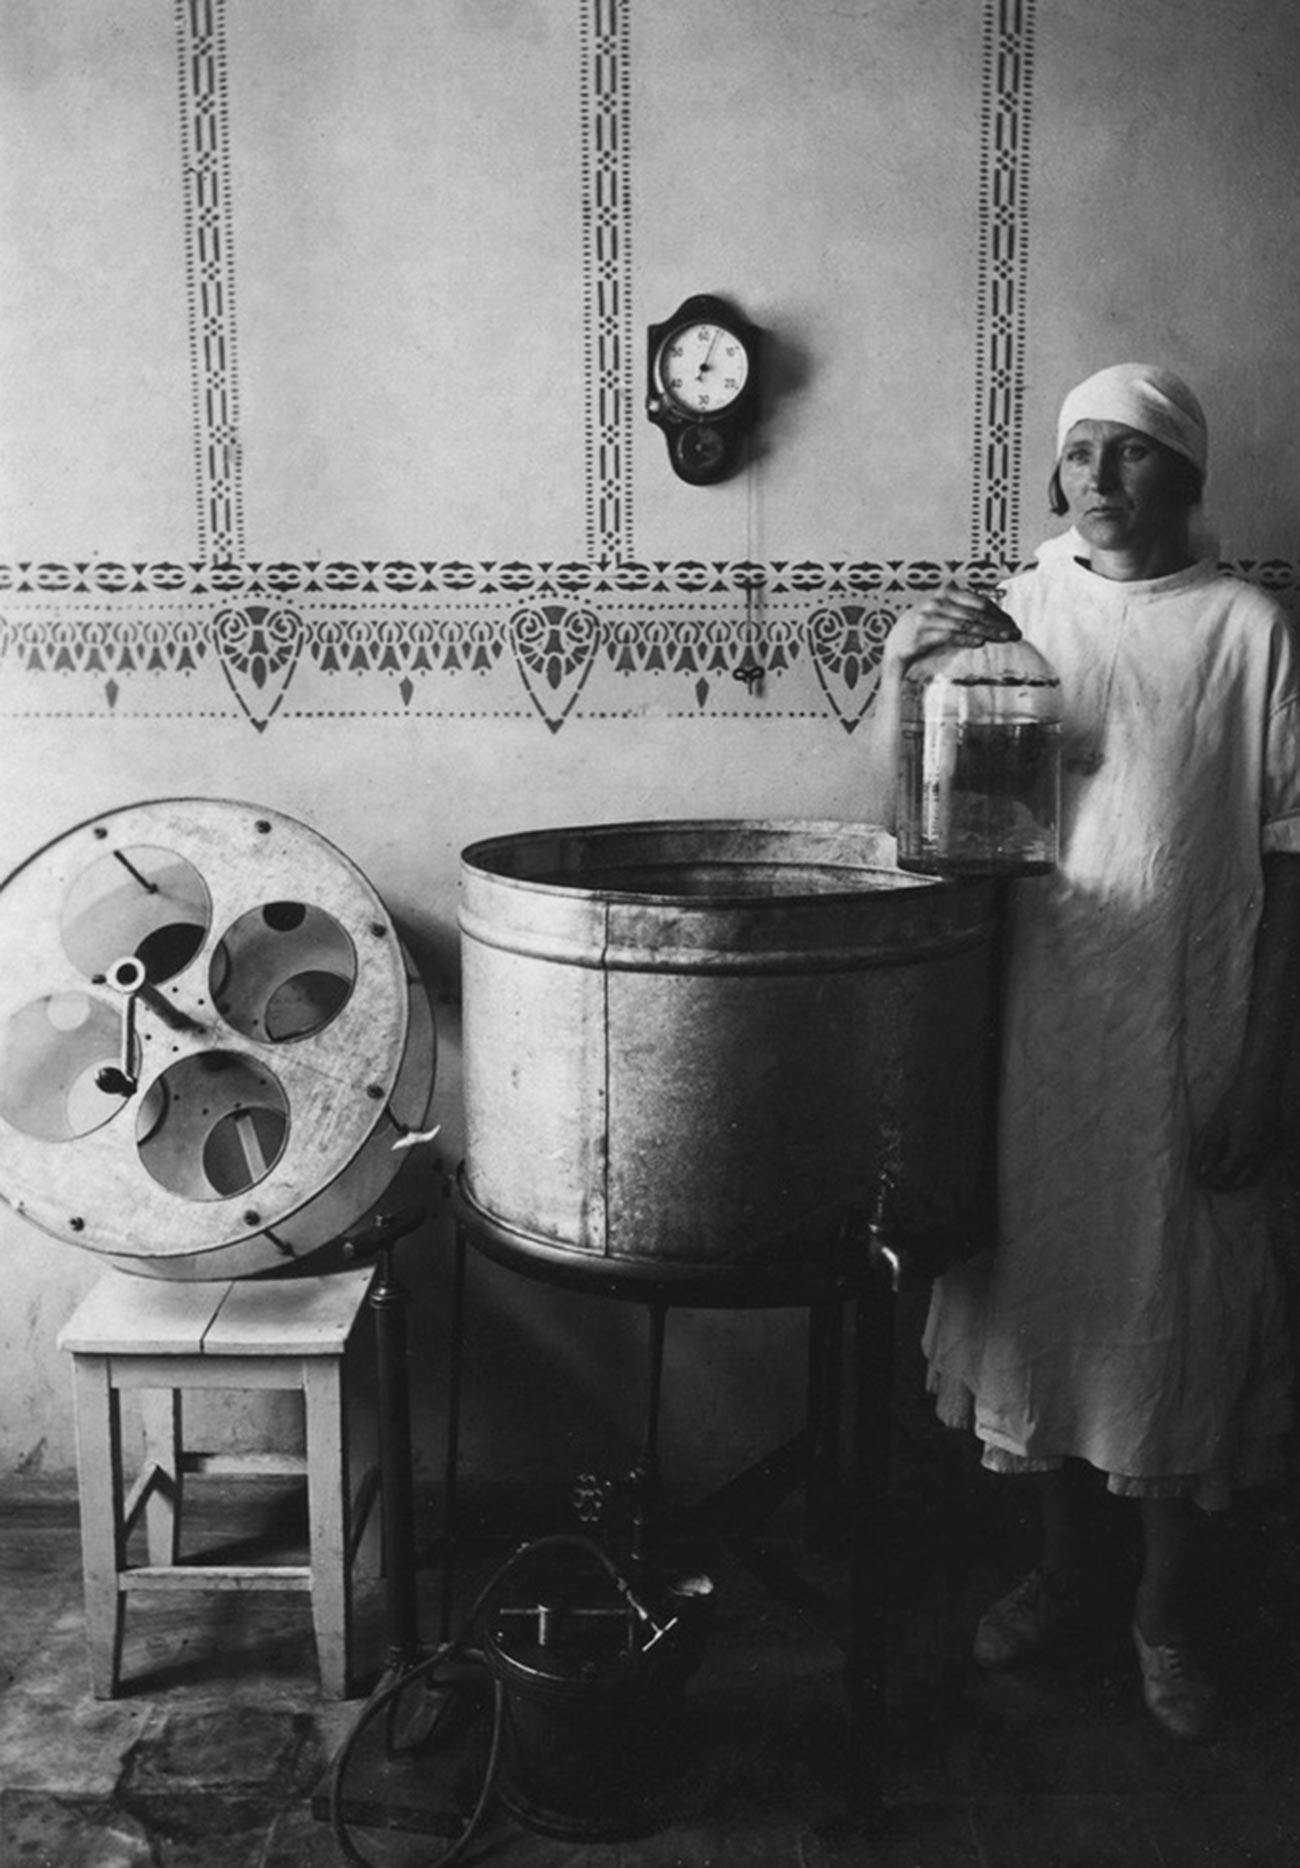 ウズベク共和国タシケントのワクチン・ホエイ研究所でポーズを取る看護婦、1920年代